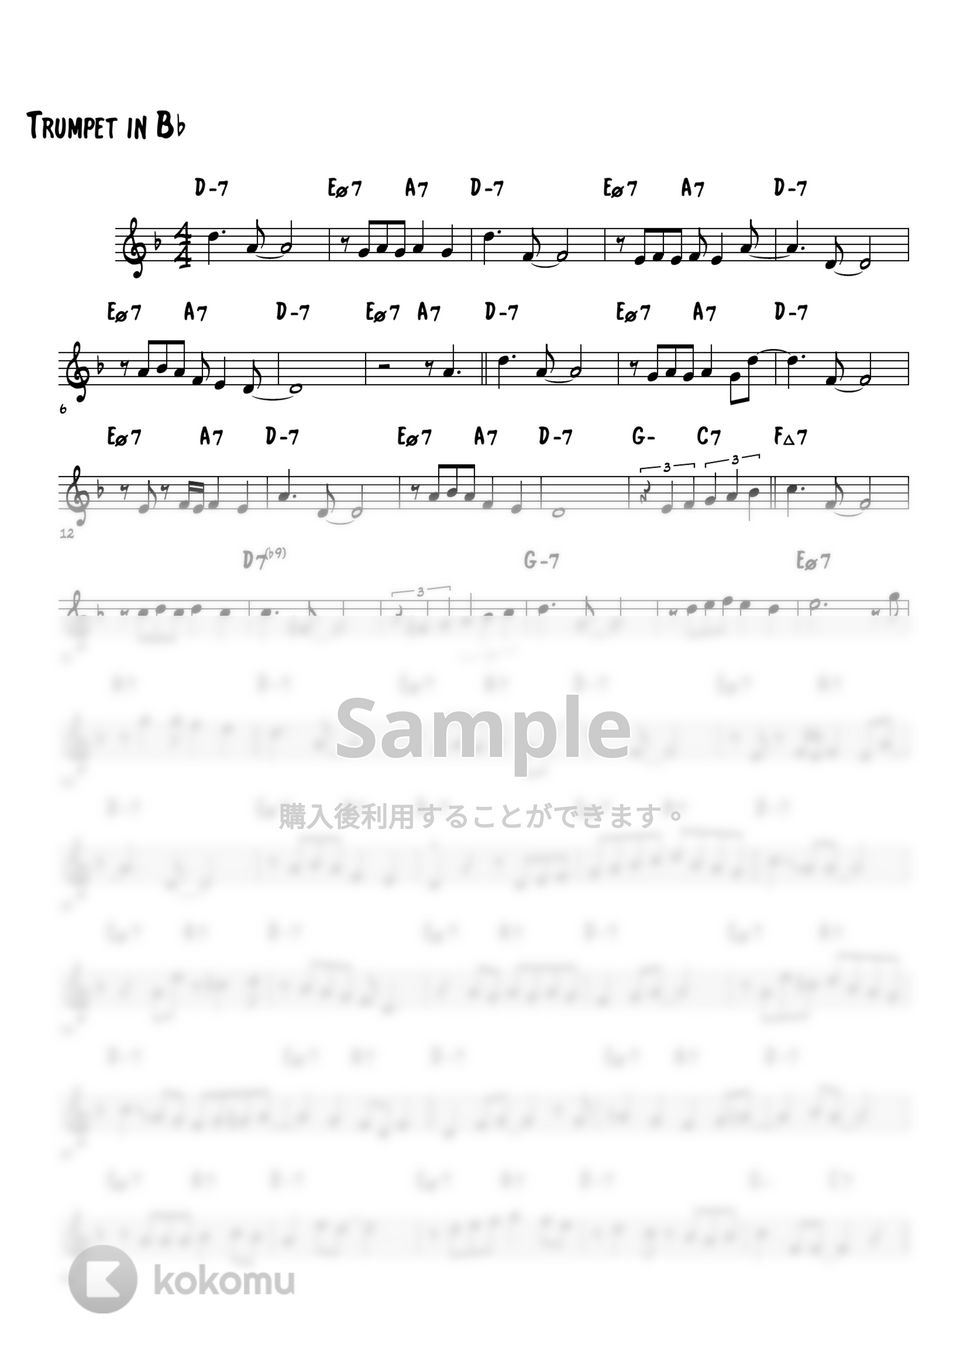 SIGMUND ROMBERG - Softly As In A Morning Sunrise (メロディー、アドリブソロ演奏例) by 高田将利